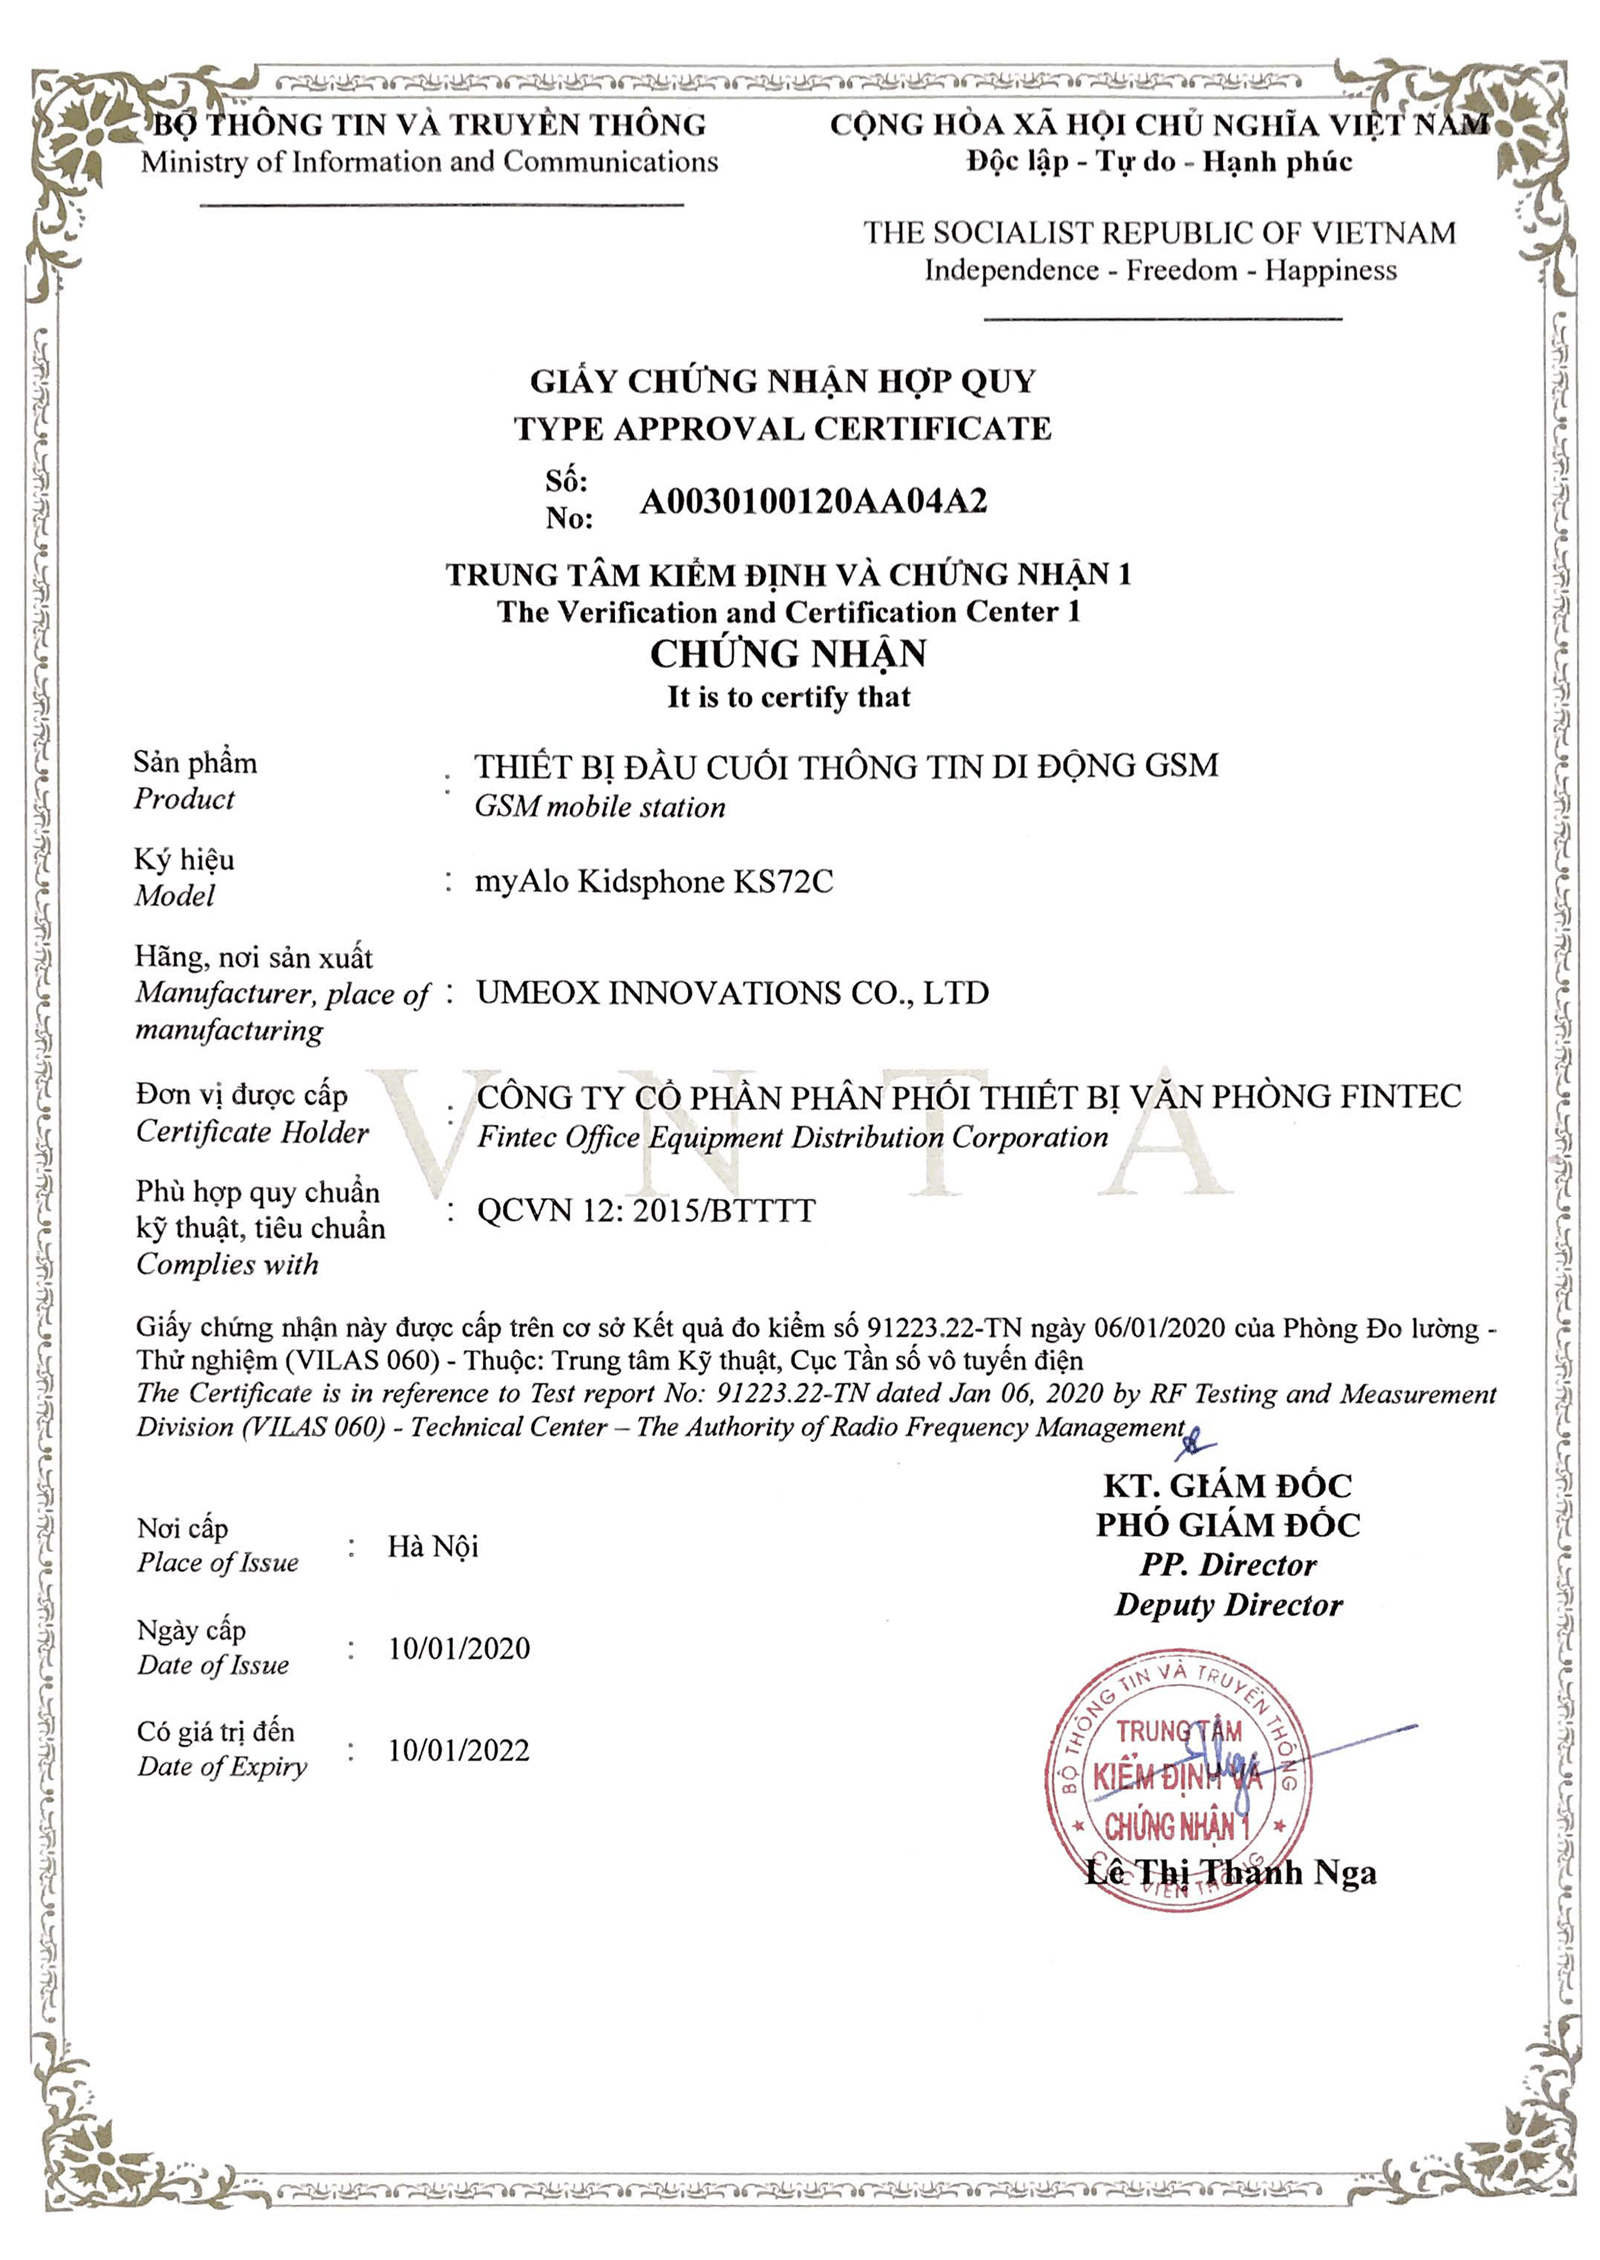 Đồng hồ định vị trẻ em myAlo KS72C - Chứng nhận hợp quy Quy chuẩn Việt Nam QCVN12:2015/BTTT